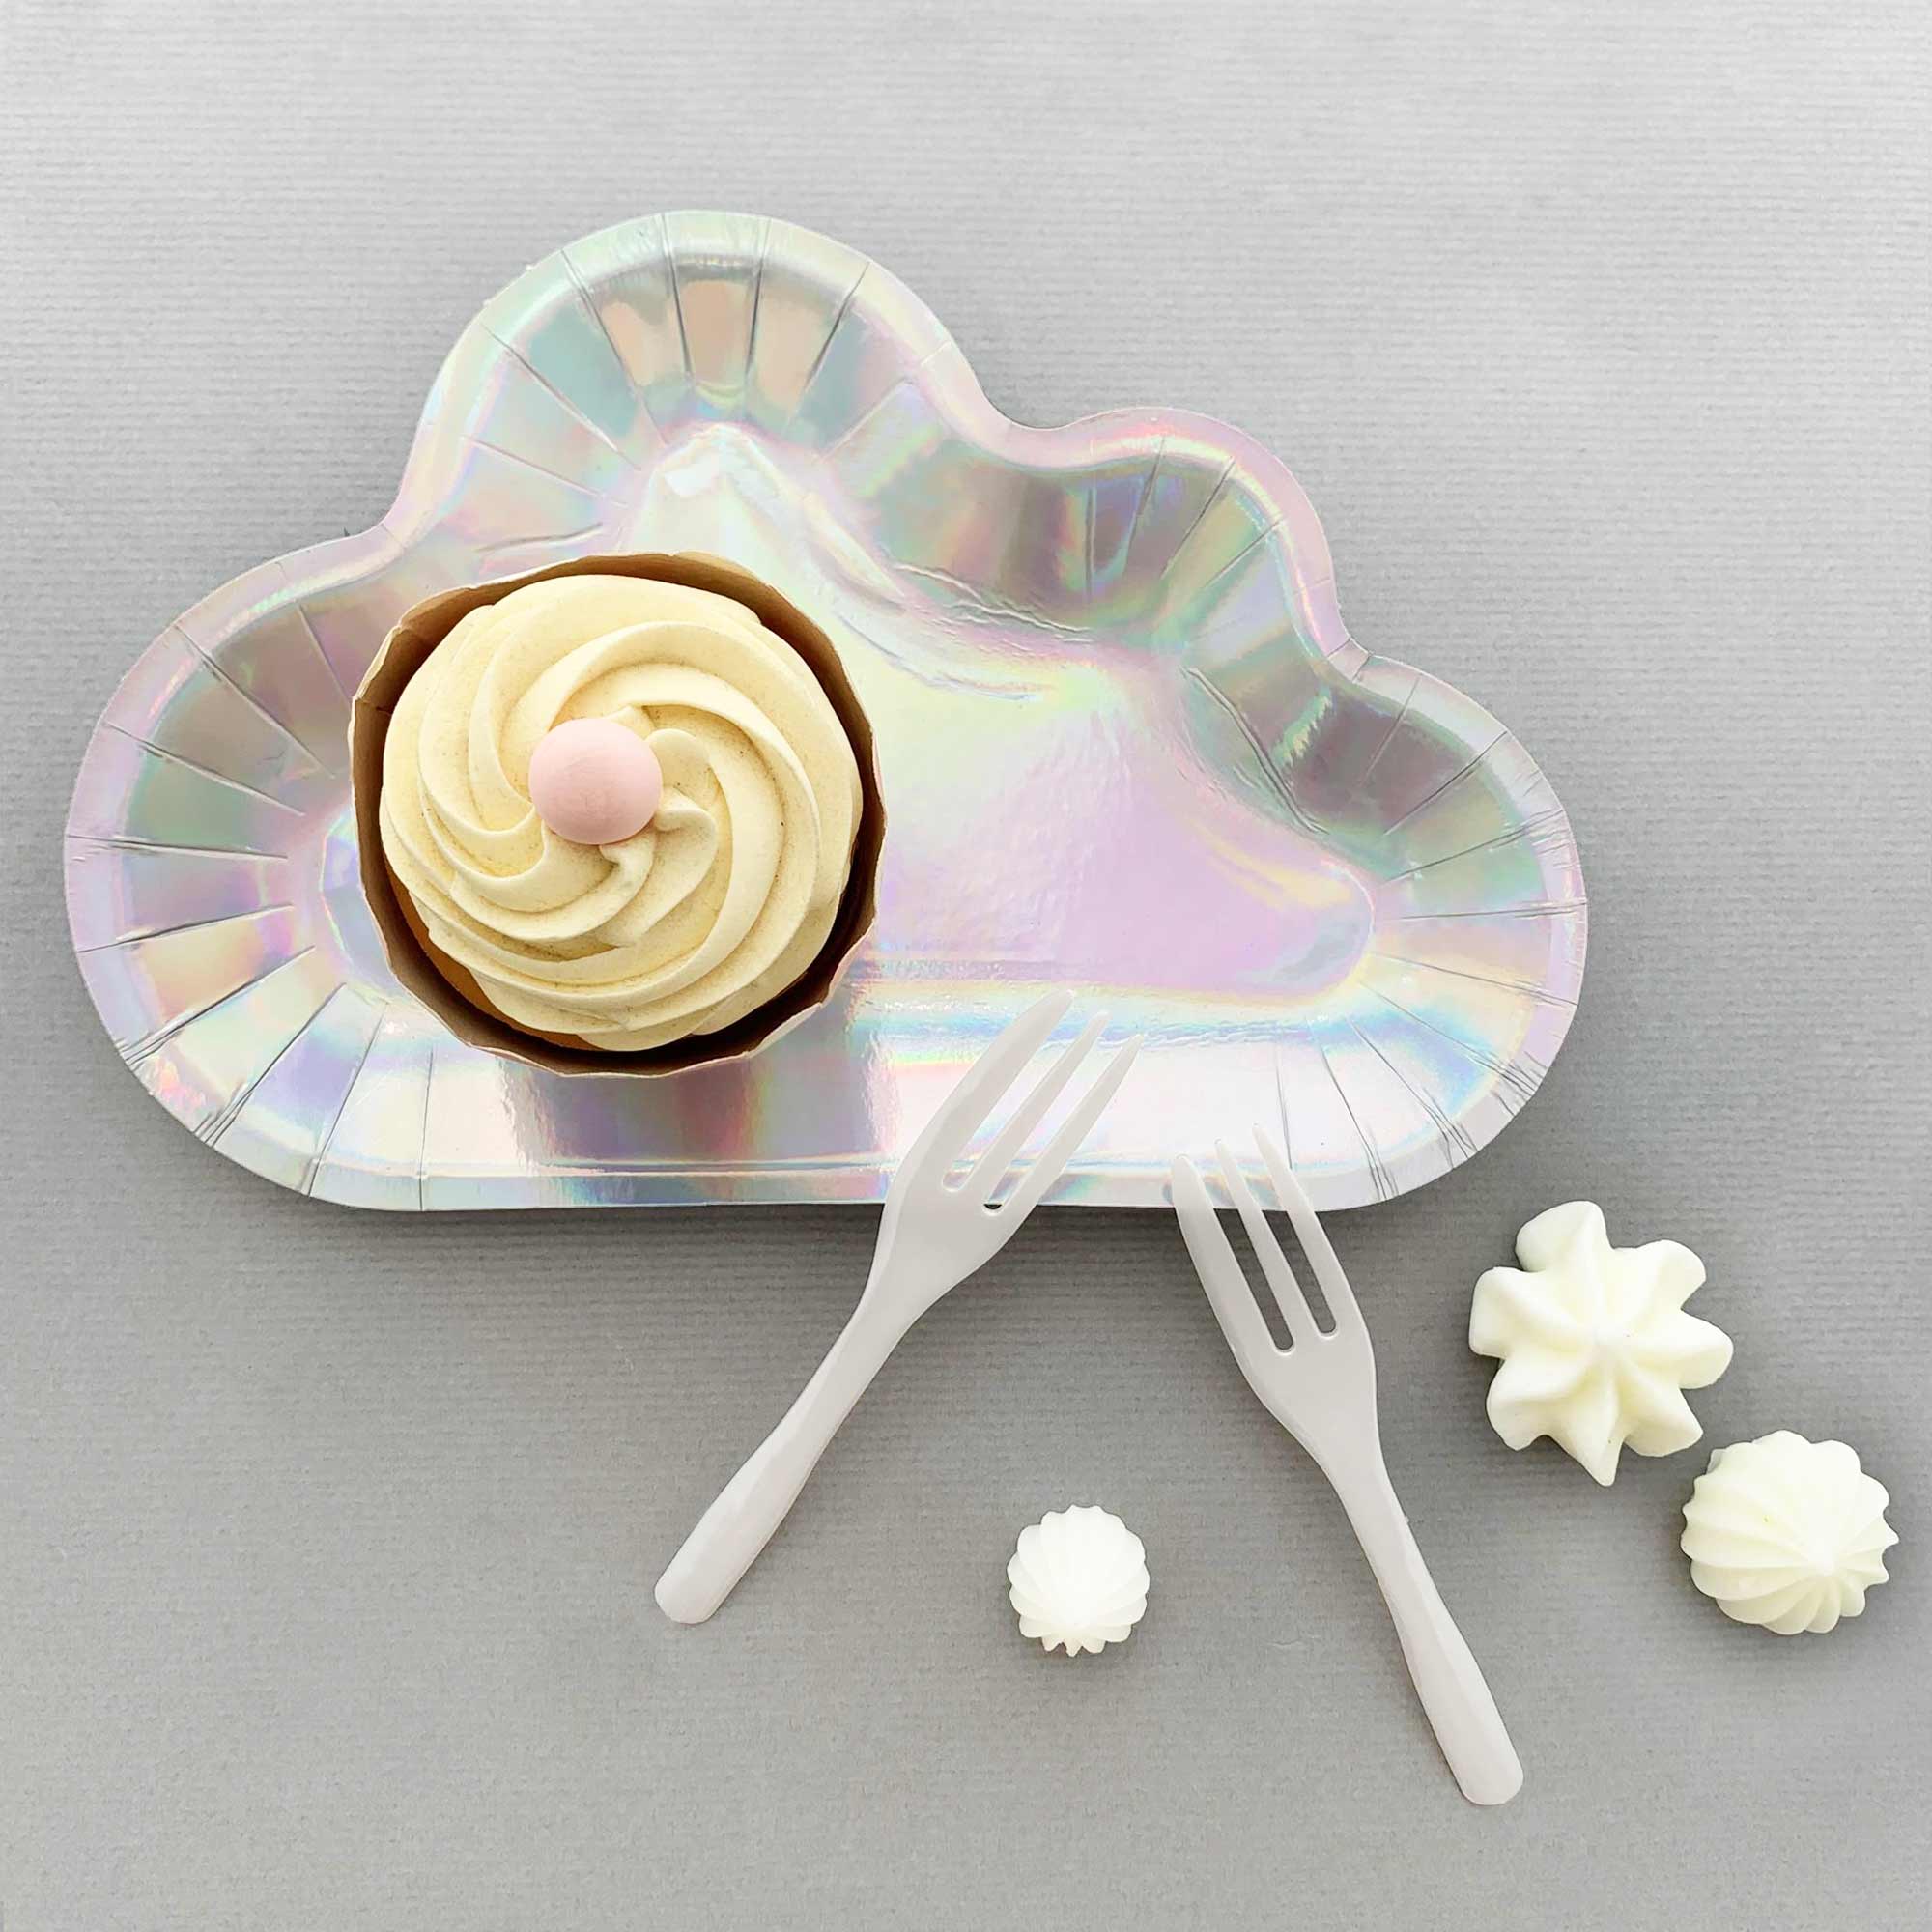 キラキラした雲のデザインのケーキプレートとフォークセットは、空のテーマのバースデーパーティーにぴったりです。キラキラした雲のプレートで食卓を彩りましょう